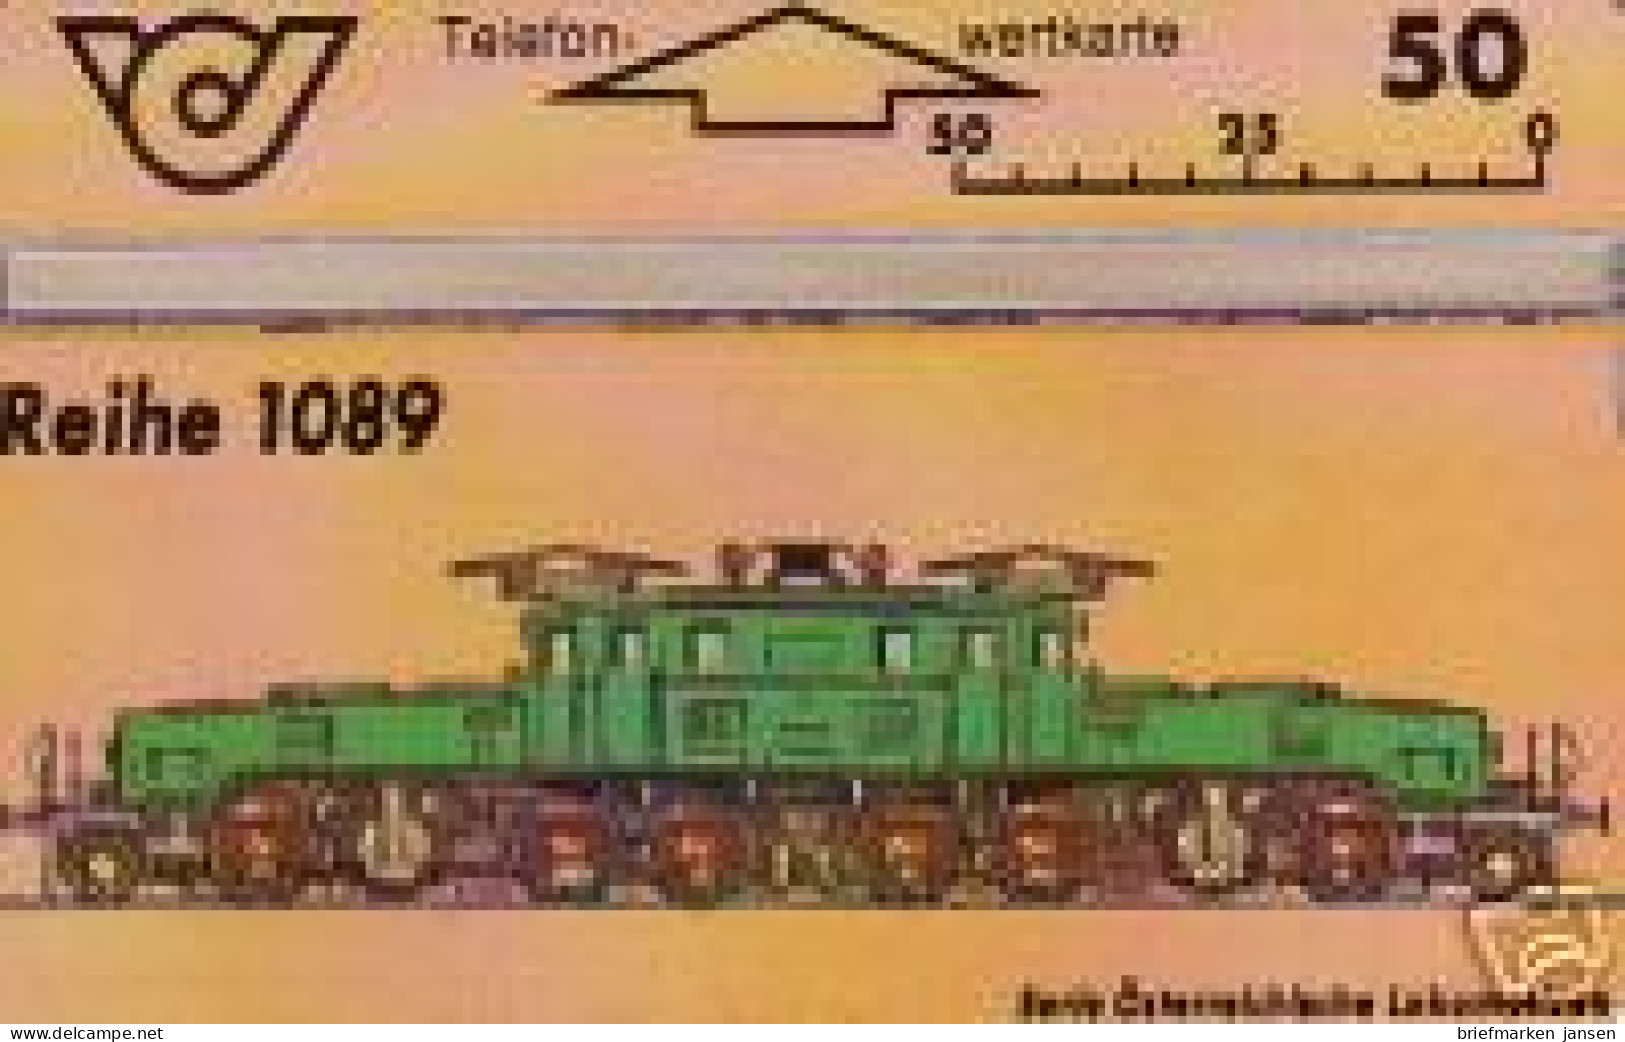 Telefonkarte Österreich, Lokomotiven, Krokodil, Reihe 1089, 50 - Zonder Classificatie